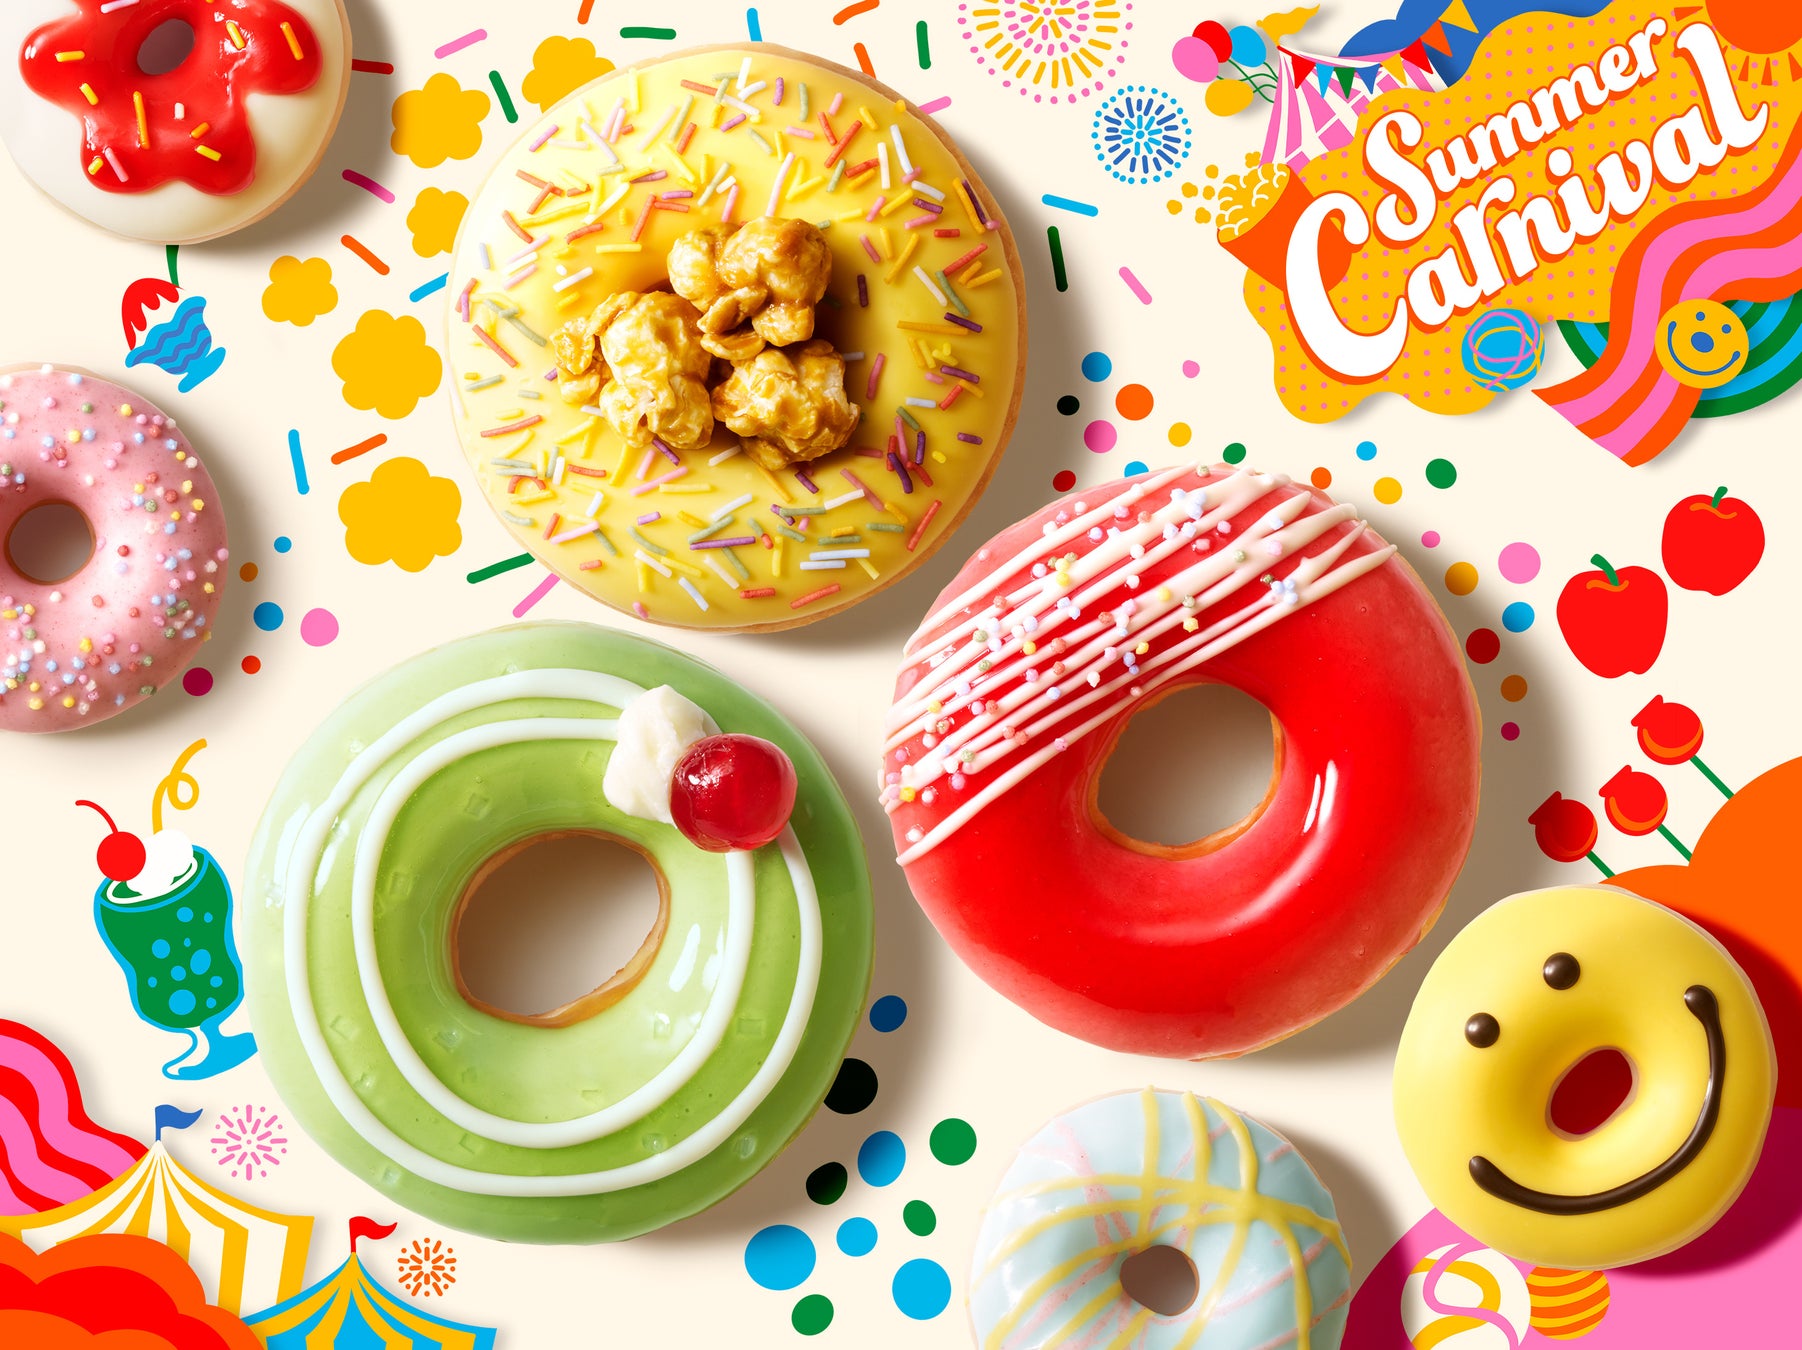 アップルキャンディー、ポップコーン、クリームソーダがドーナツになって登場　今年の暑い夏は“カーニバル”気分でポップに楽しもう！『Summer Carnival』